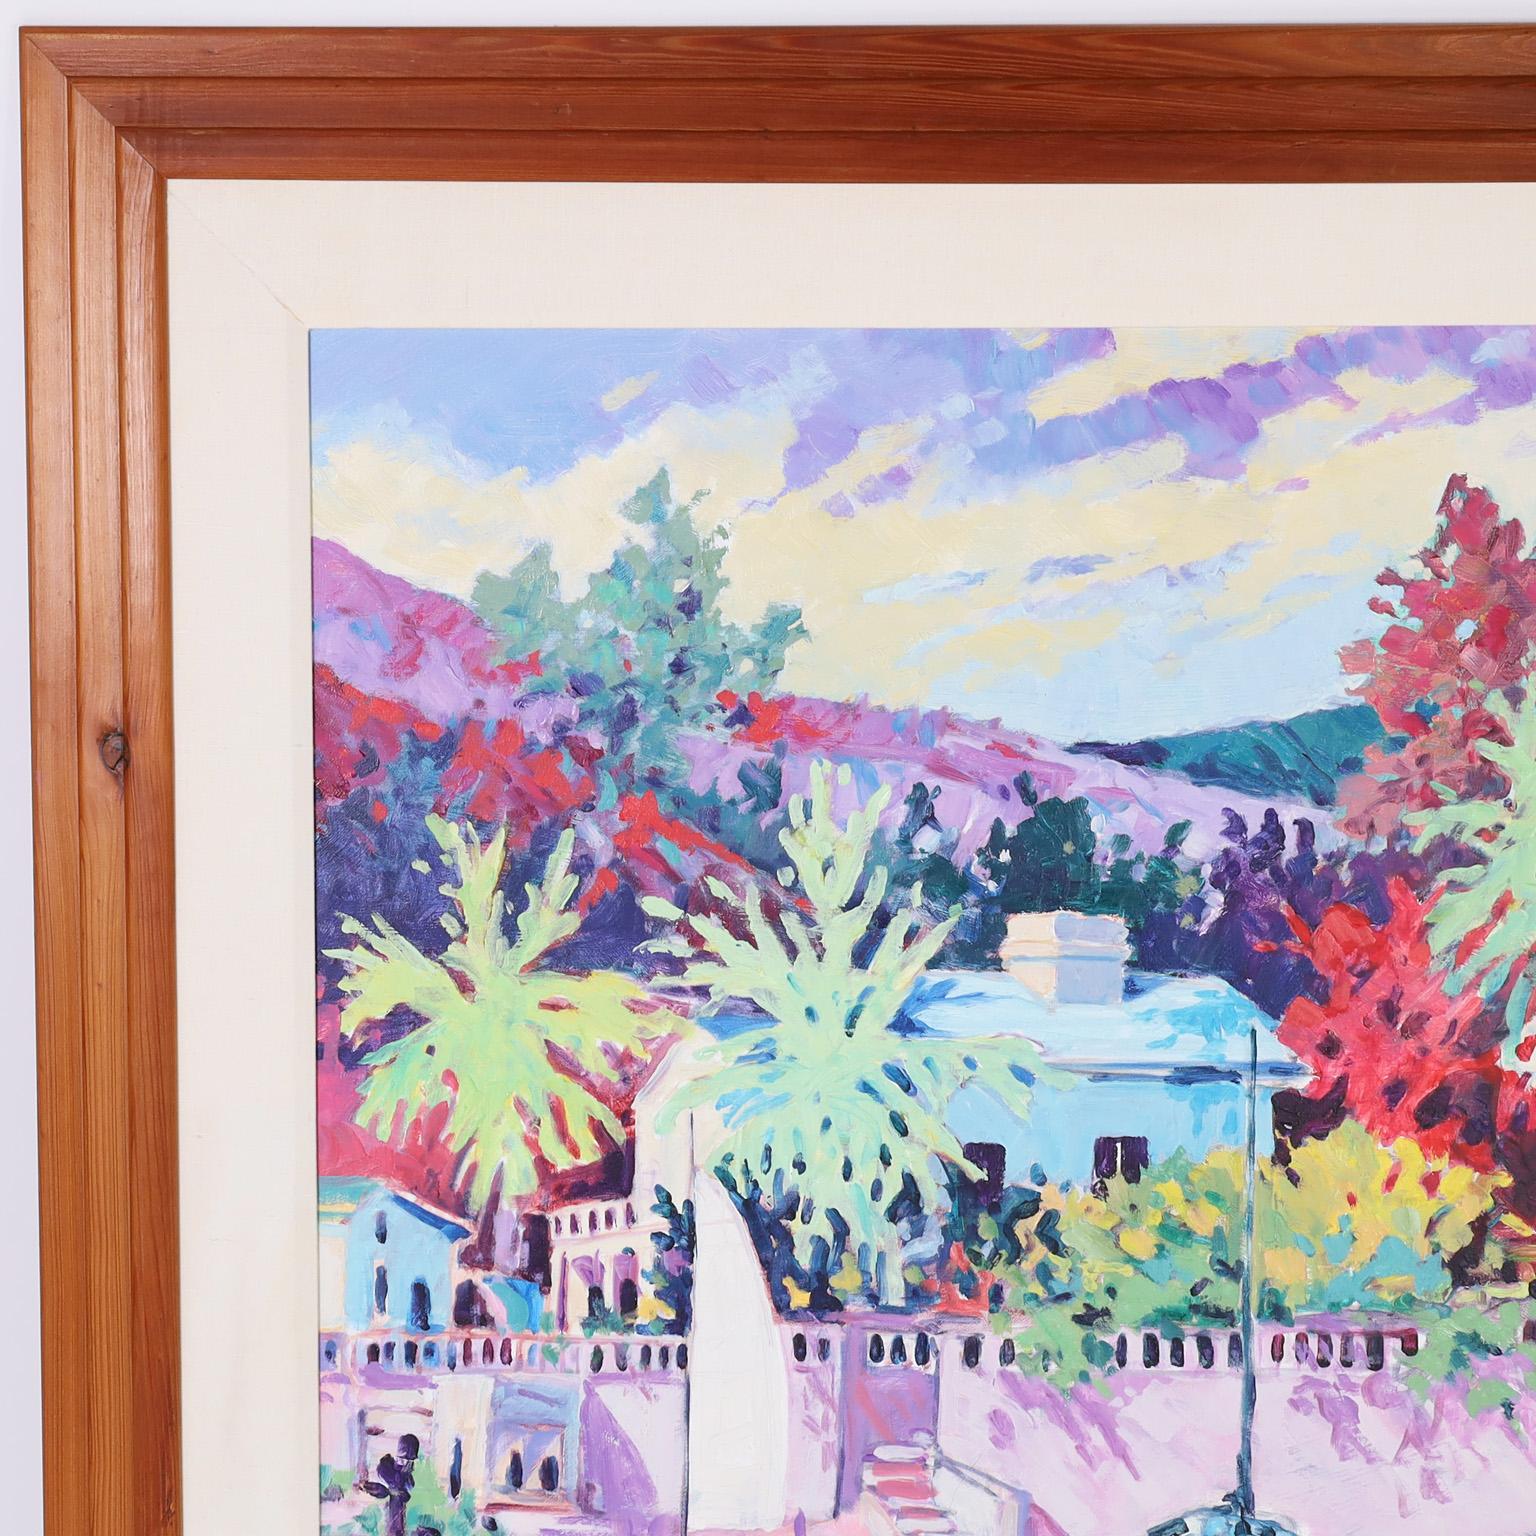 Peinture acrylique sur toile d'une scène tropicale avec des palmiers, des maisons et des bateaux exécutée avec des traits audacieux et des couleurs vives, signée Hawk et présentée dans un cadre en bois.